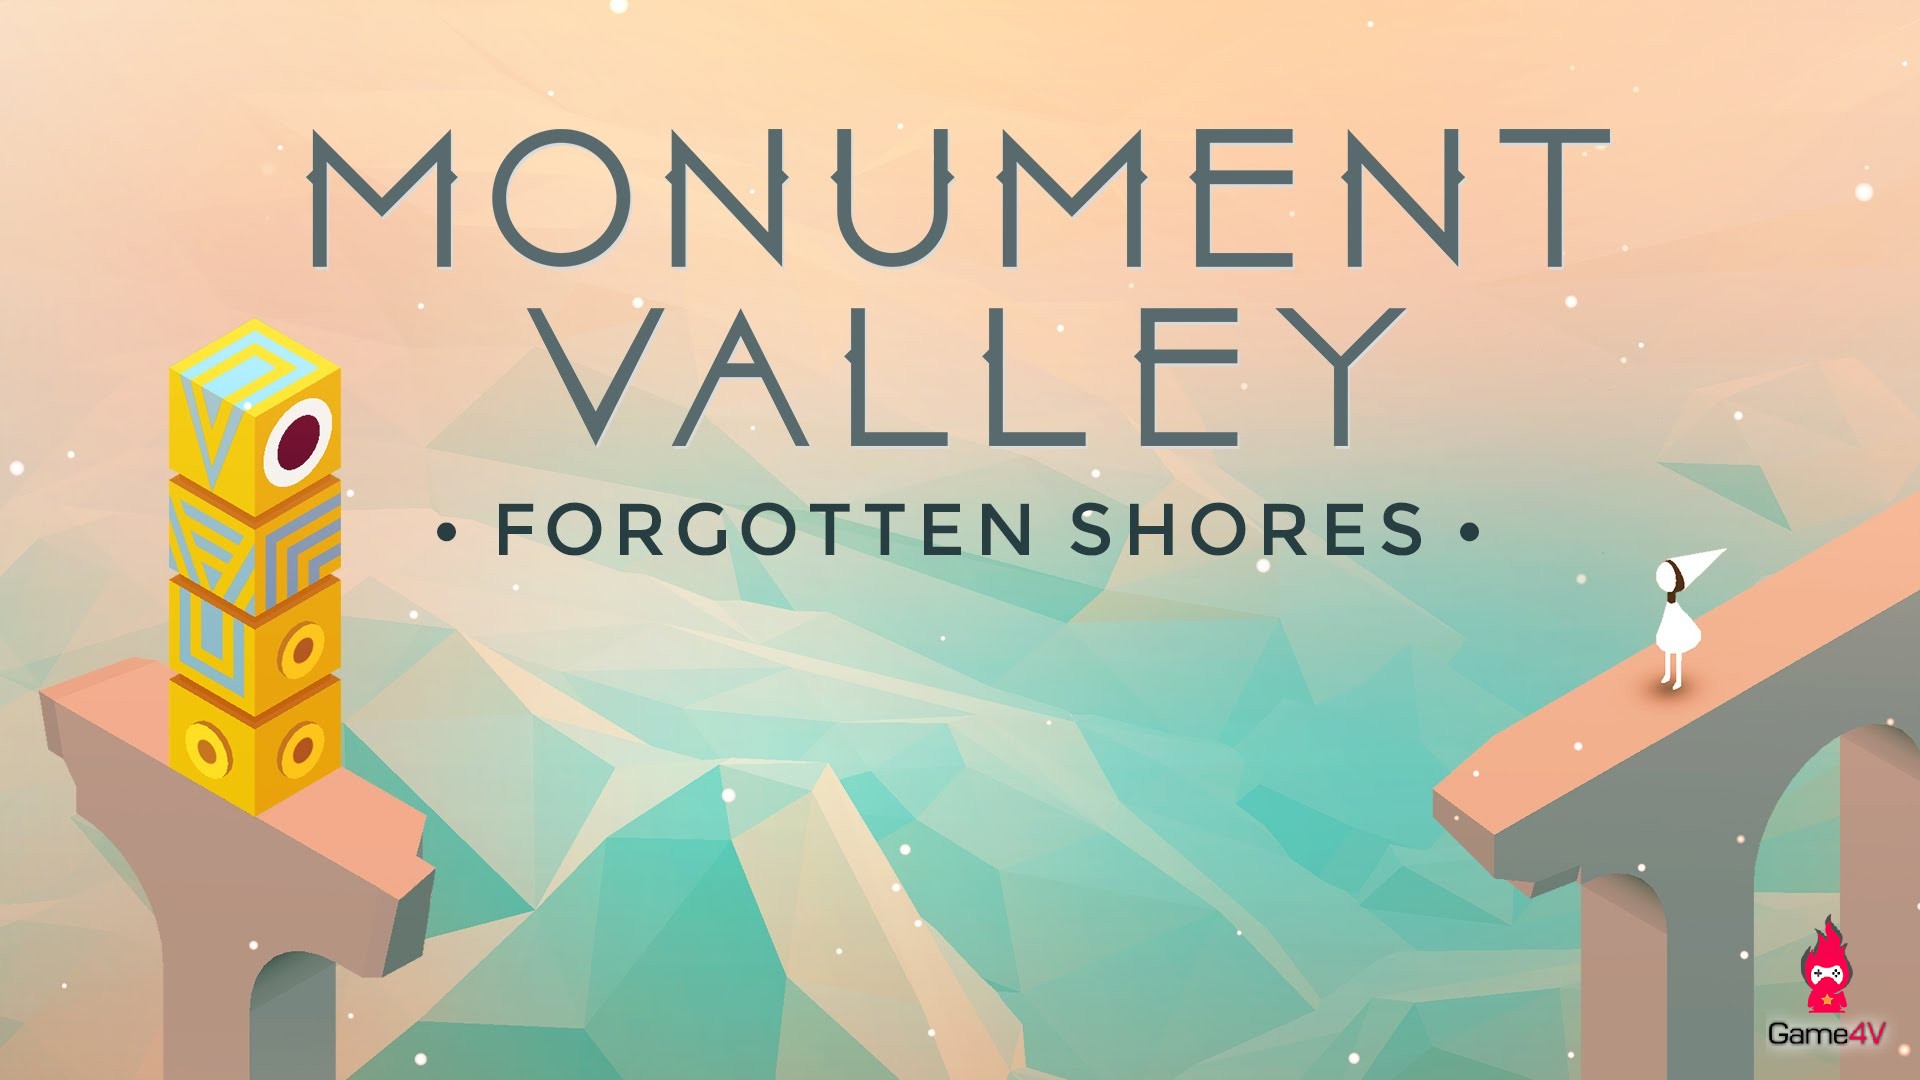 Nhanh tay lấy ngay Monument Valley - tựa game giải đố cực hay đang được miễn phí trên hệ điều hành Android